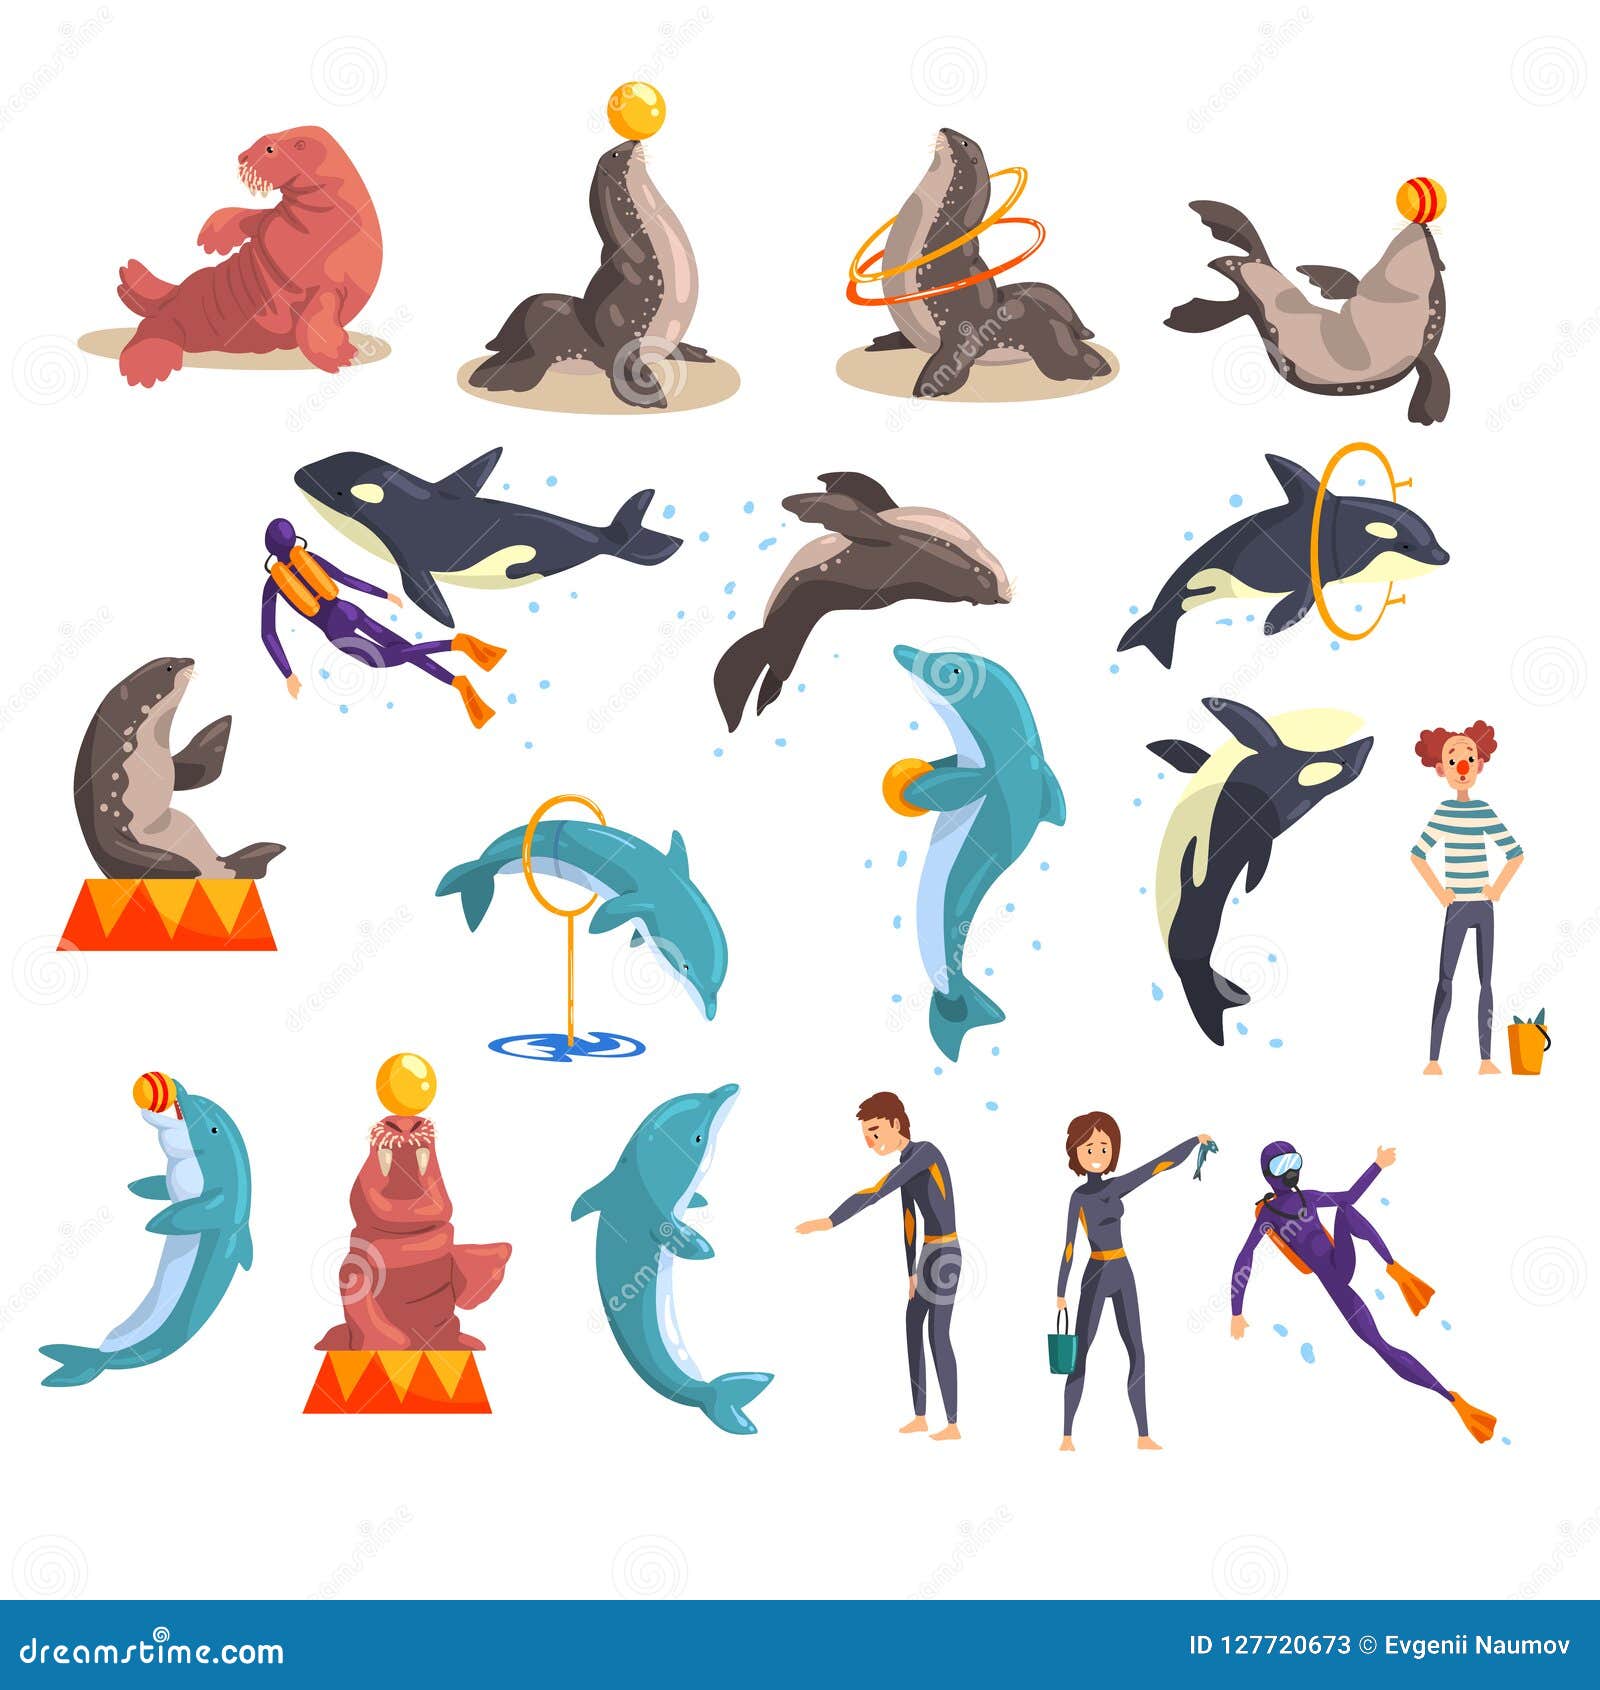 oceanarium or dolphinarium set, sea animals and trainers performing in public in dolphinarium   on a